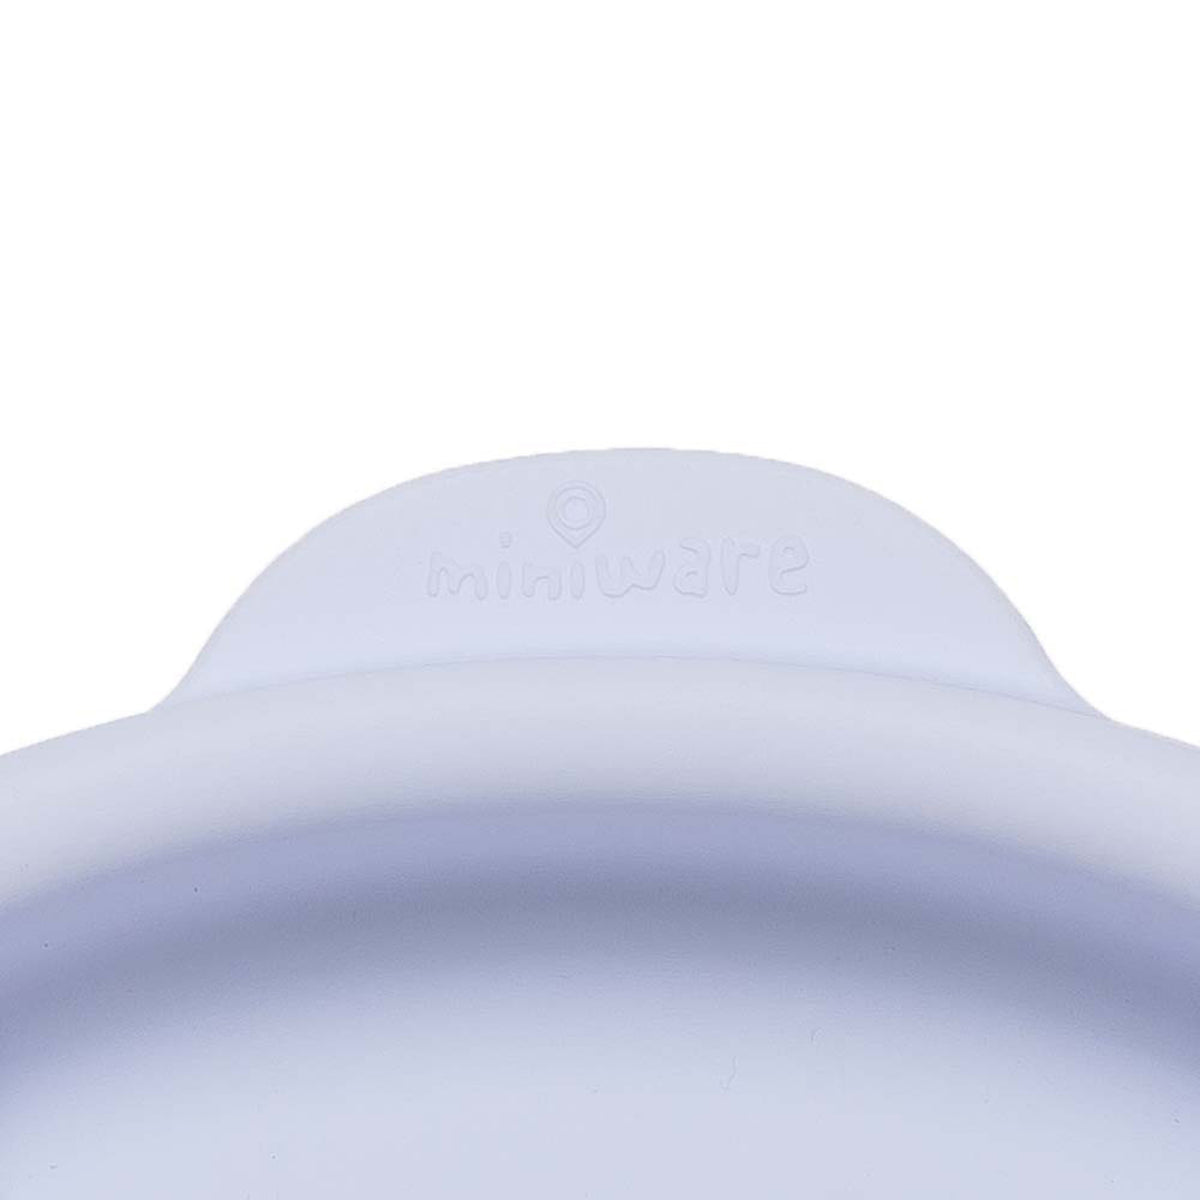 miniware-silicone-smart-divider-in-lavender- (2)